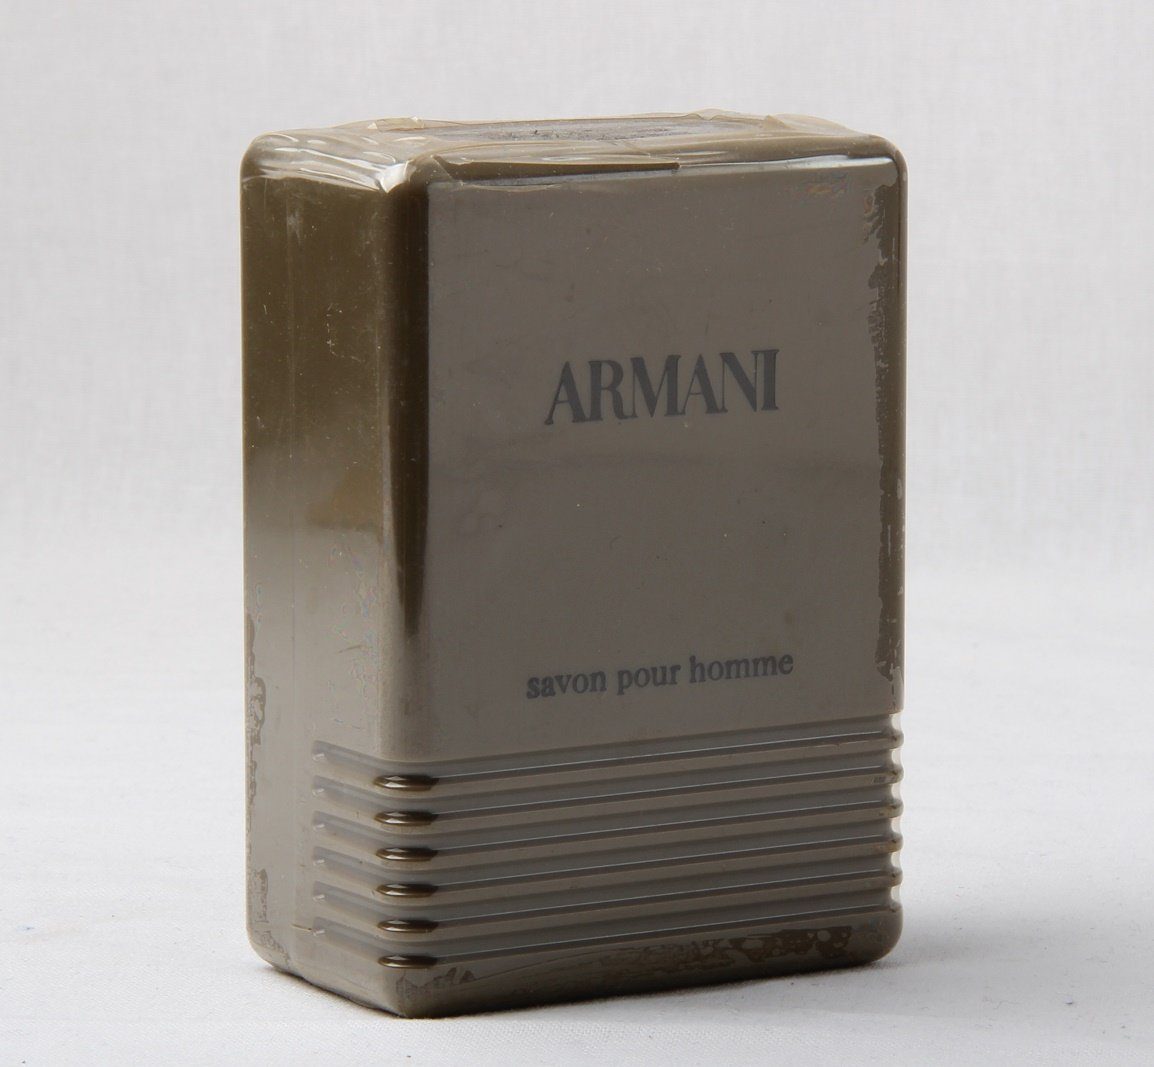 Eau Homme Armani Giorgio Pour Savon Handseife Armani 150g / Seife